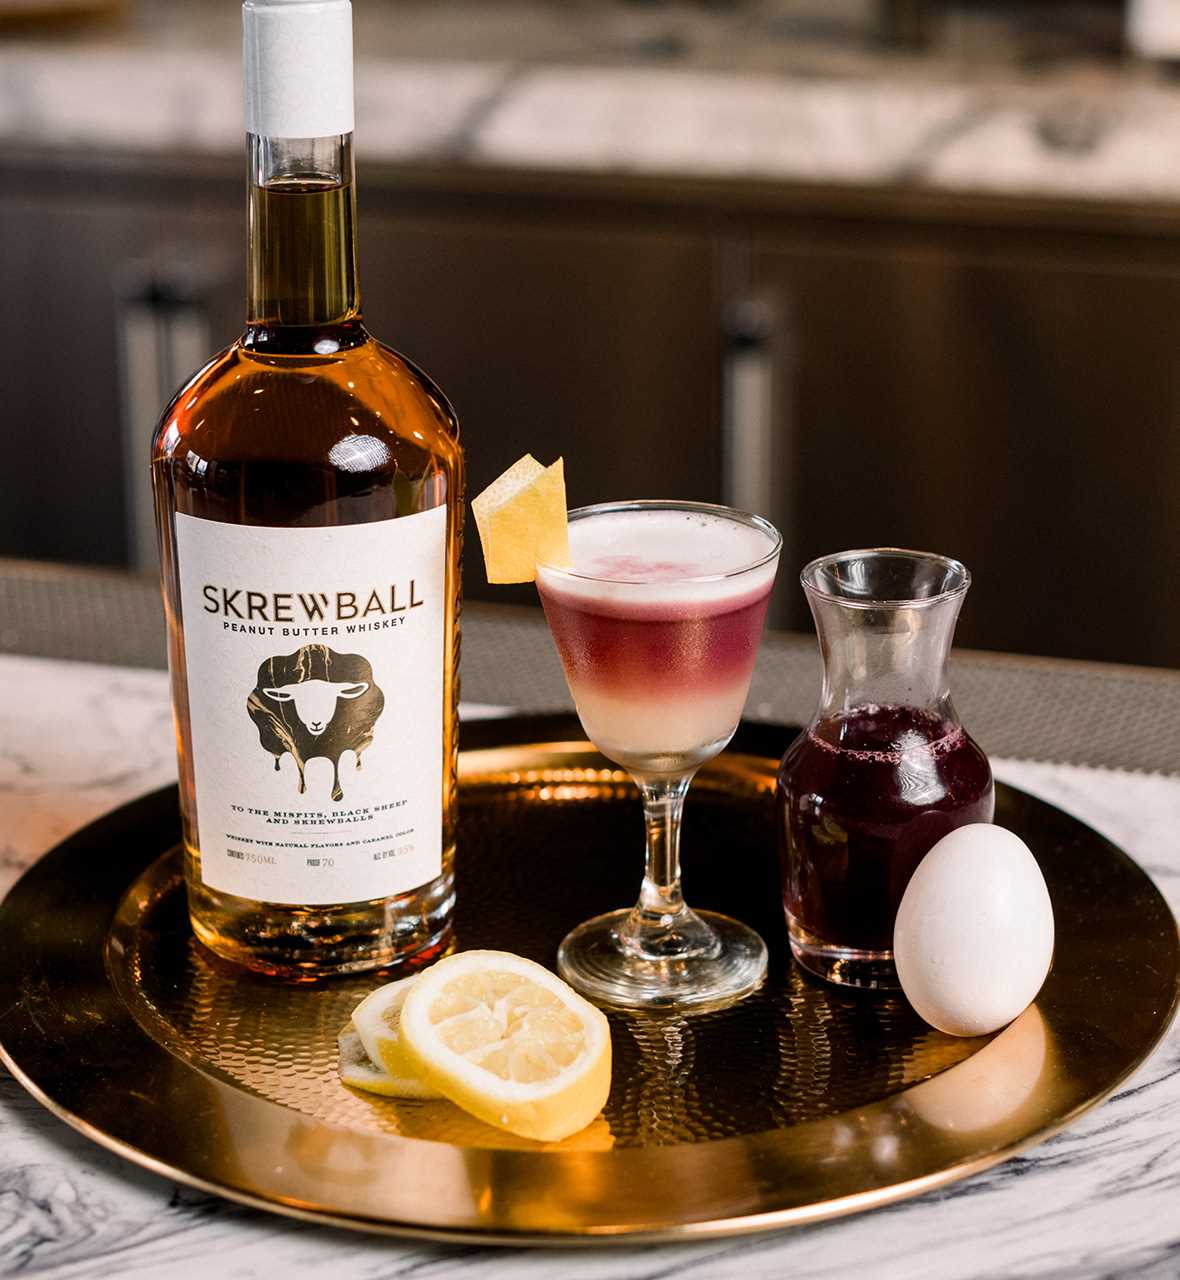 Meet the Distiller: Skrewball Peanut Butter Whiskey